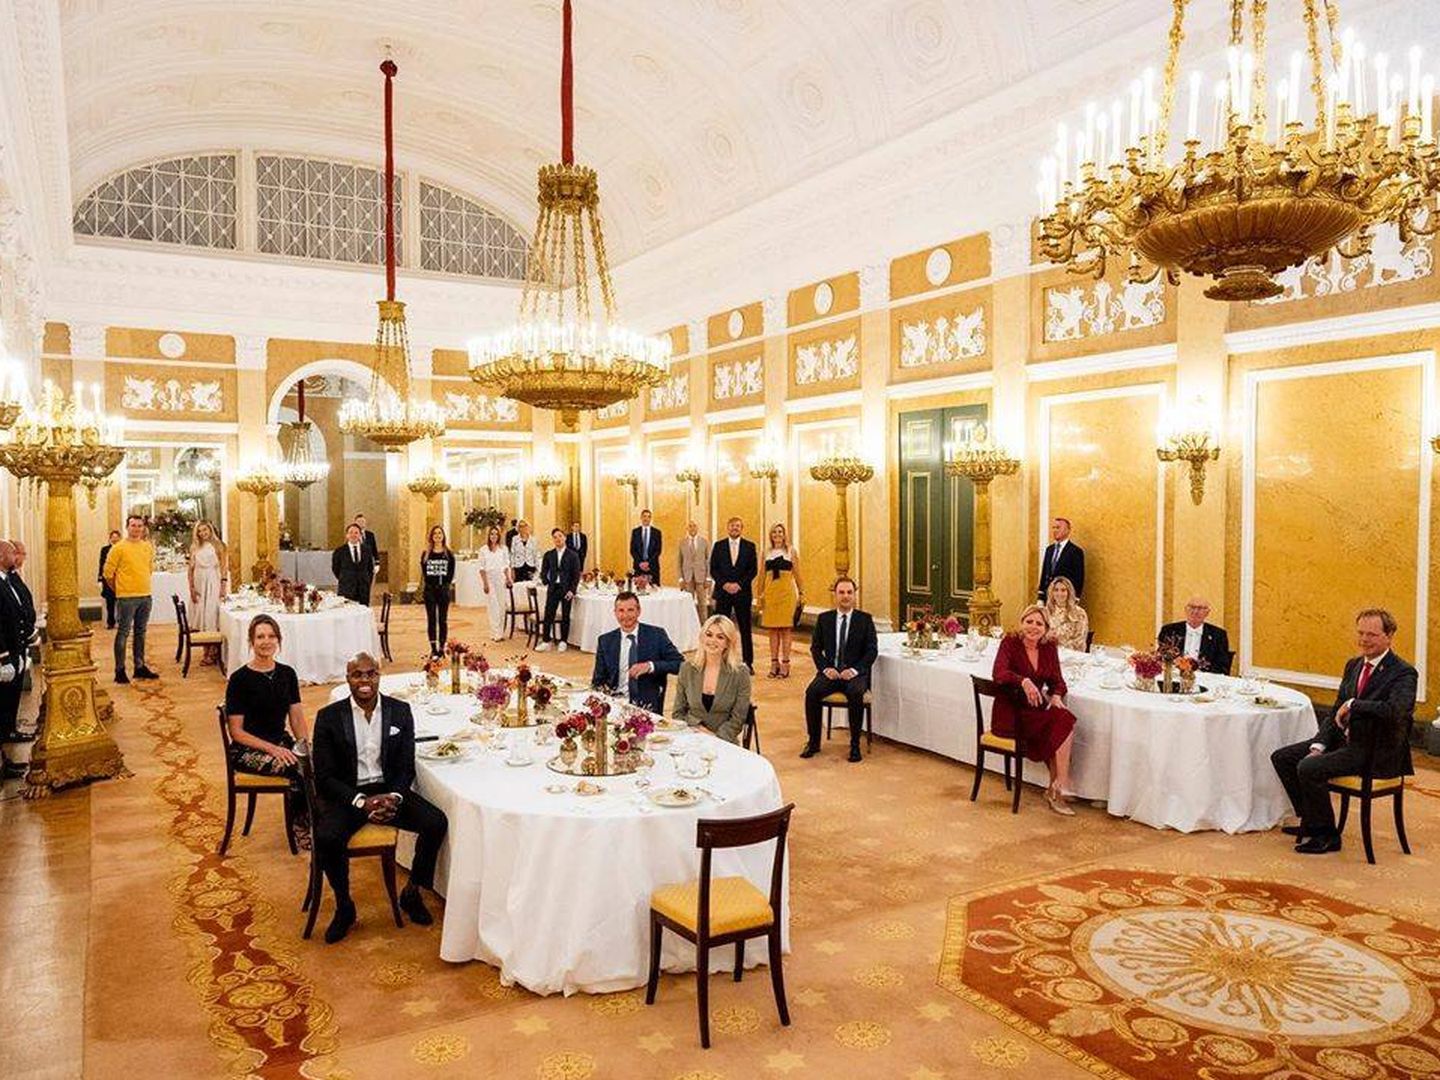 El almuerzo en el palacio Noordeinde. (Instagram @koninklijkhuis)